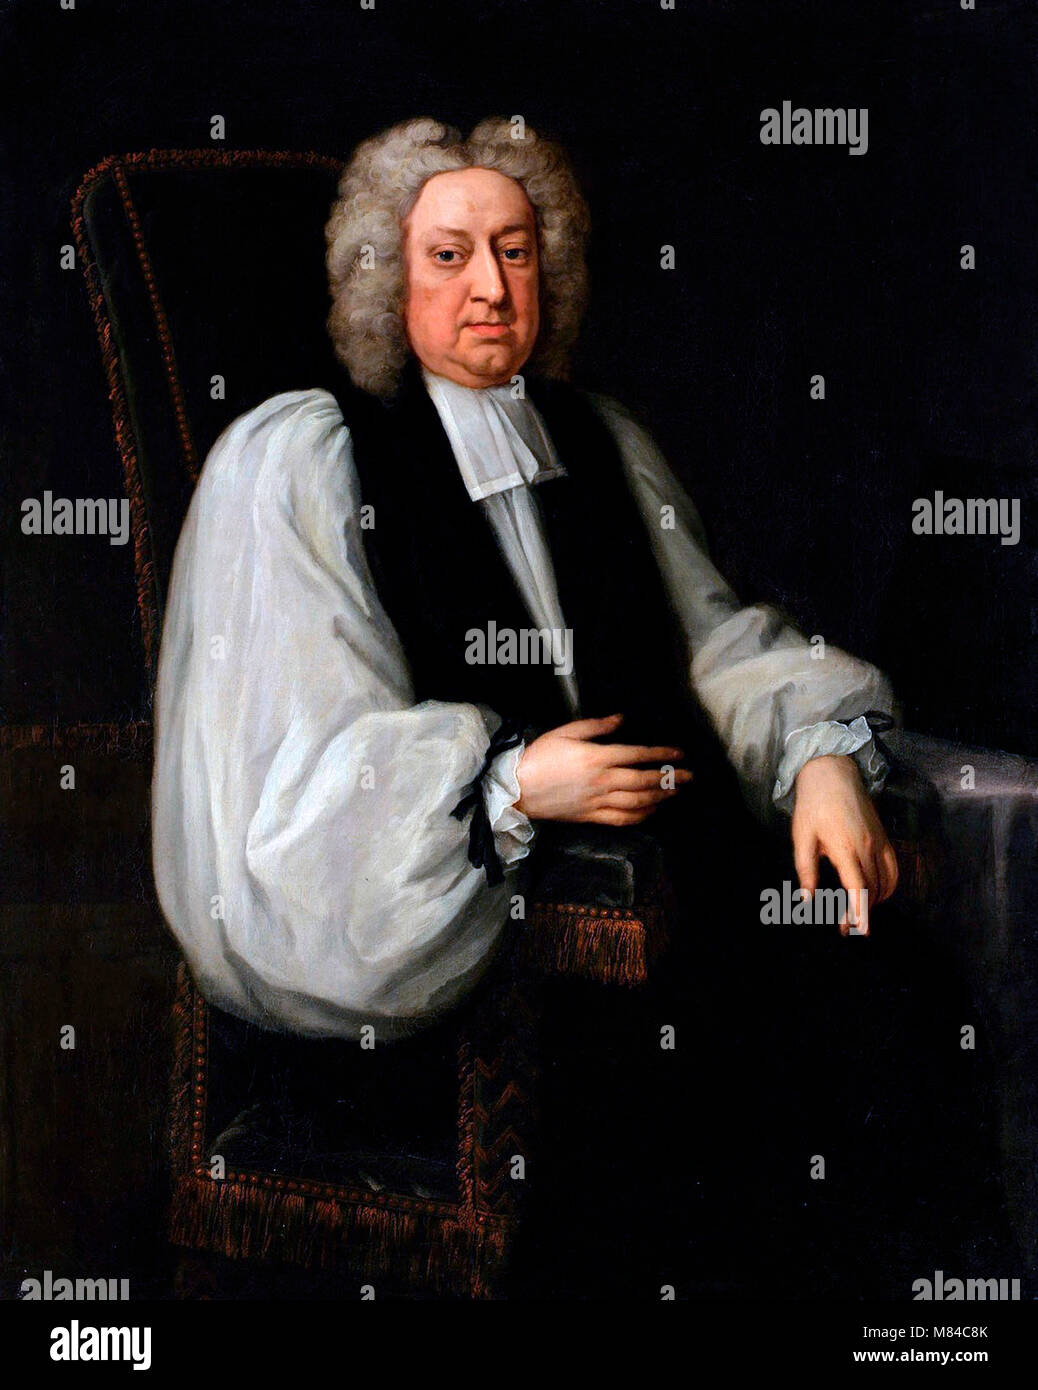 Jonathan Swift (1667-1745). Portrait de l'auteur satirique anglo-irlandais Jonathan Swift par Michael Dahl. Banque D'Images